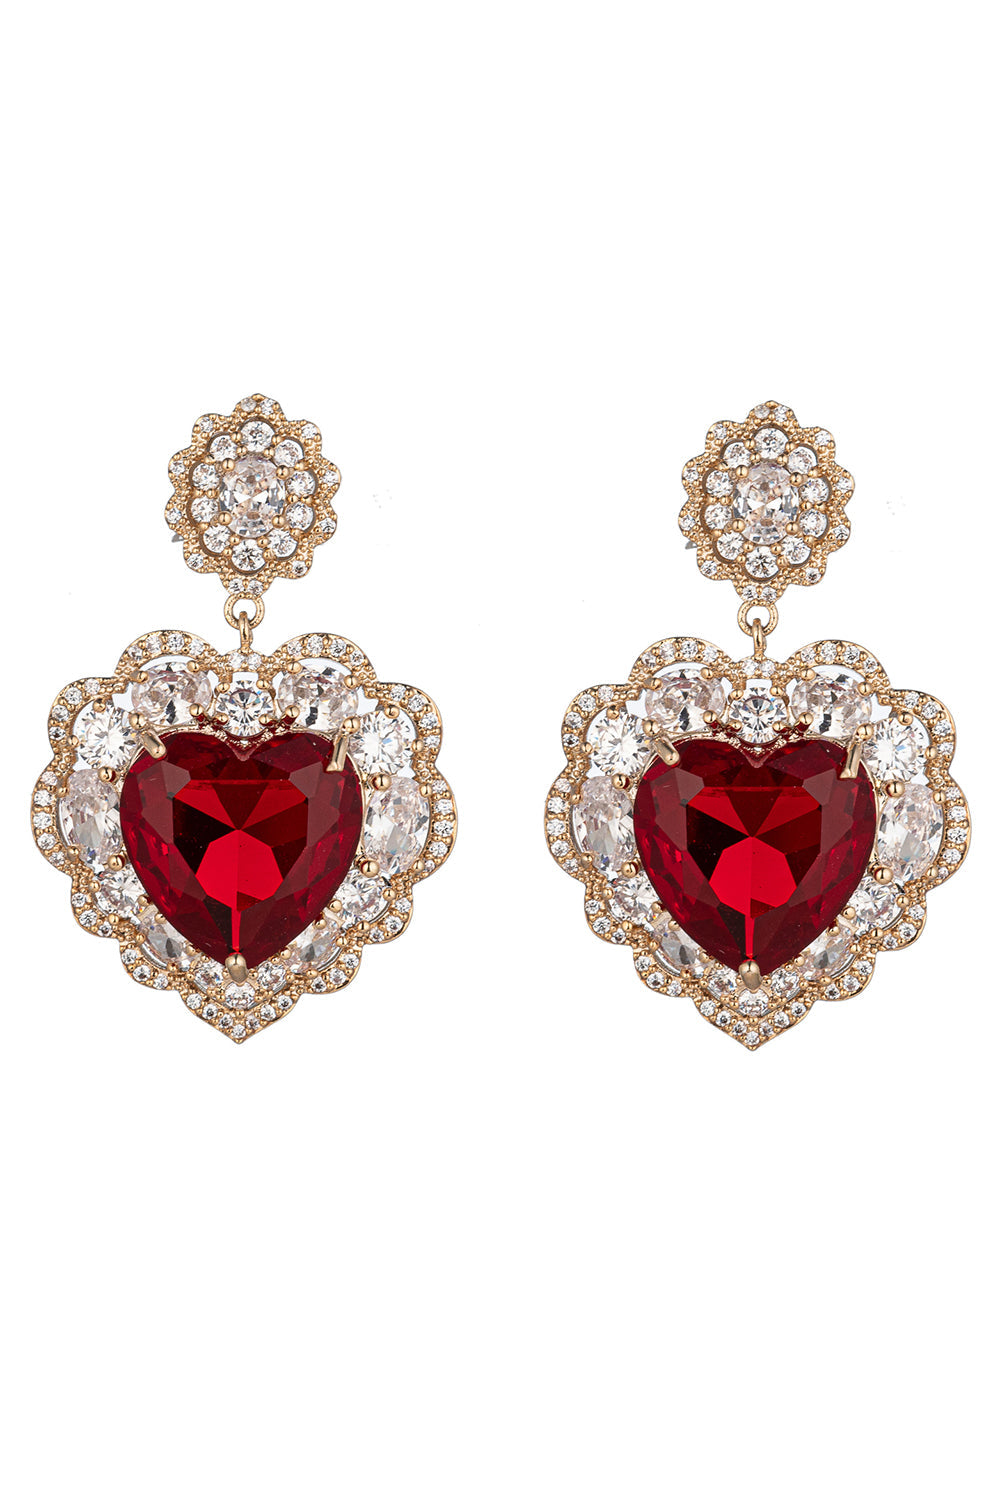 Valentines Heart Earrings Valentines Earrings for Women CZ Heart